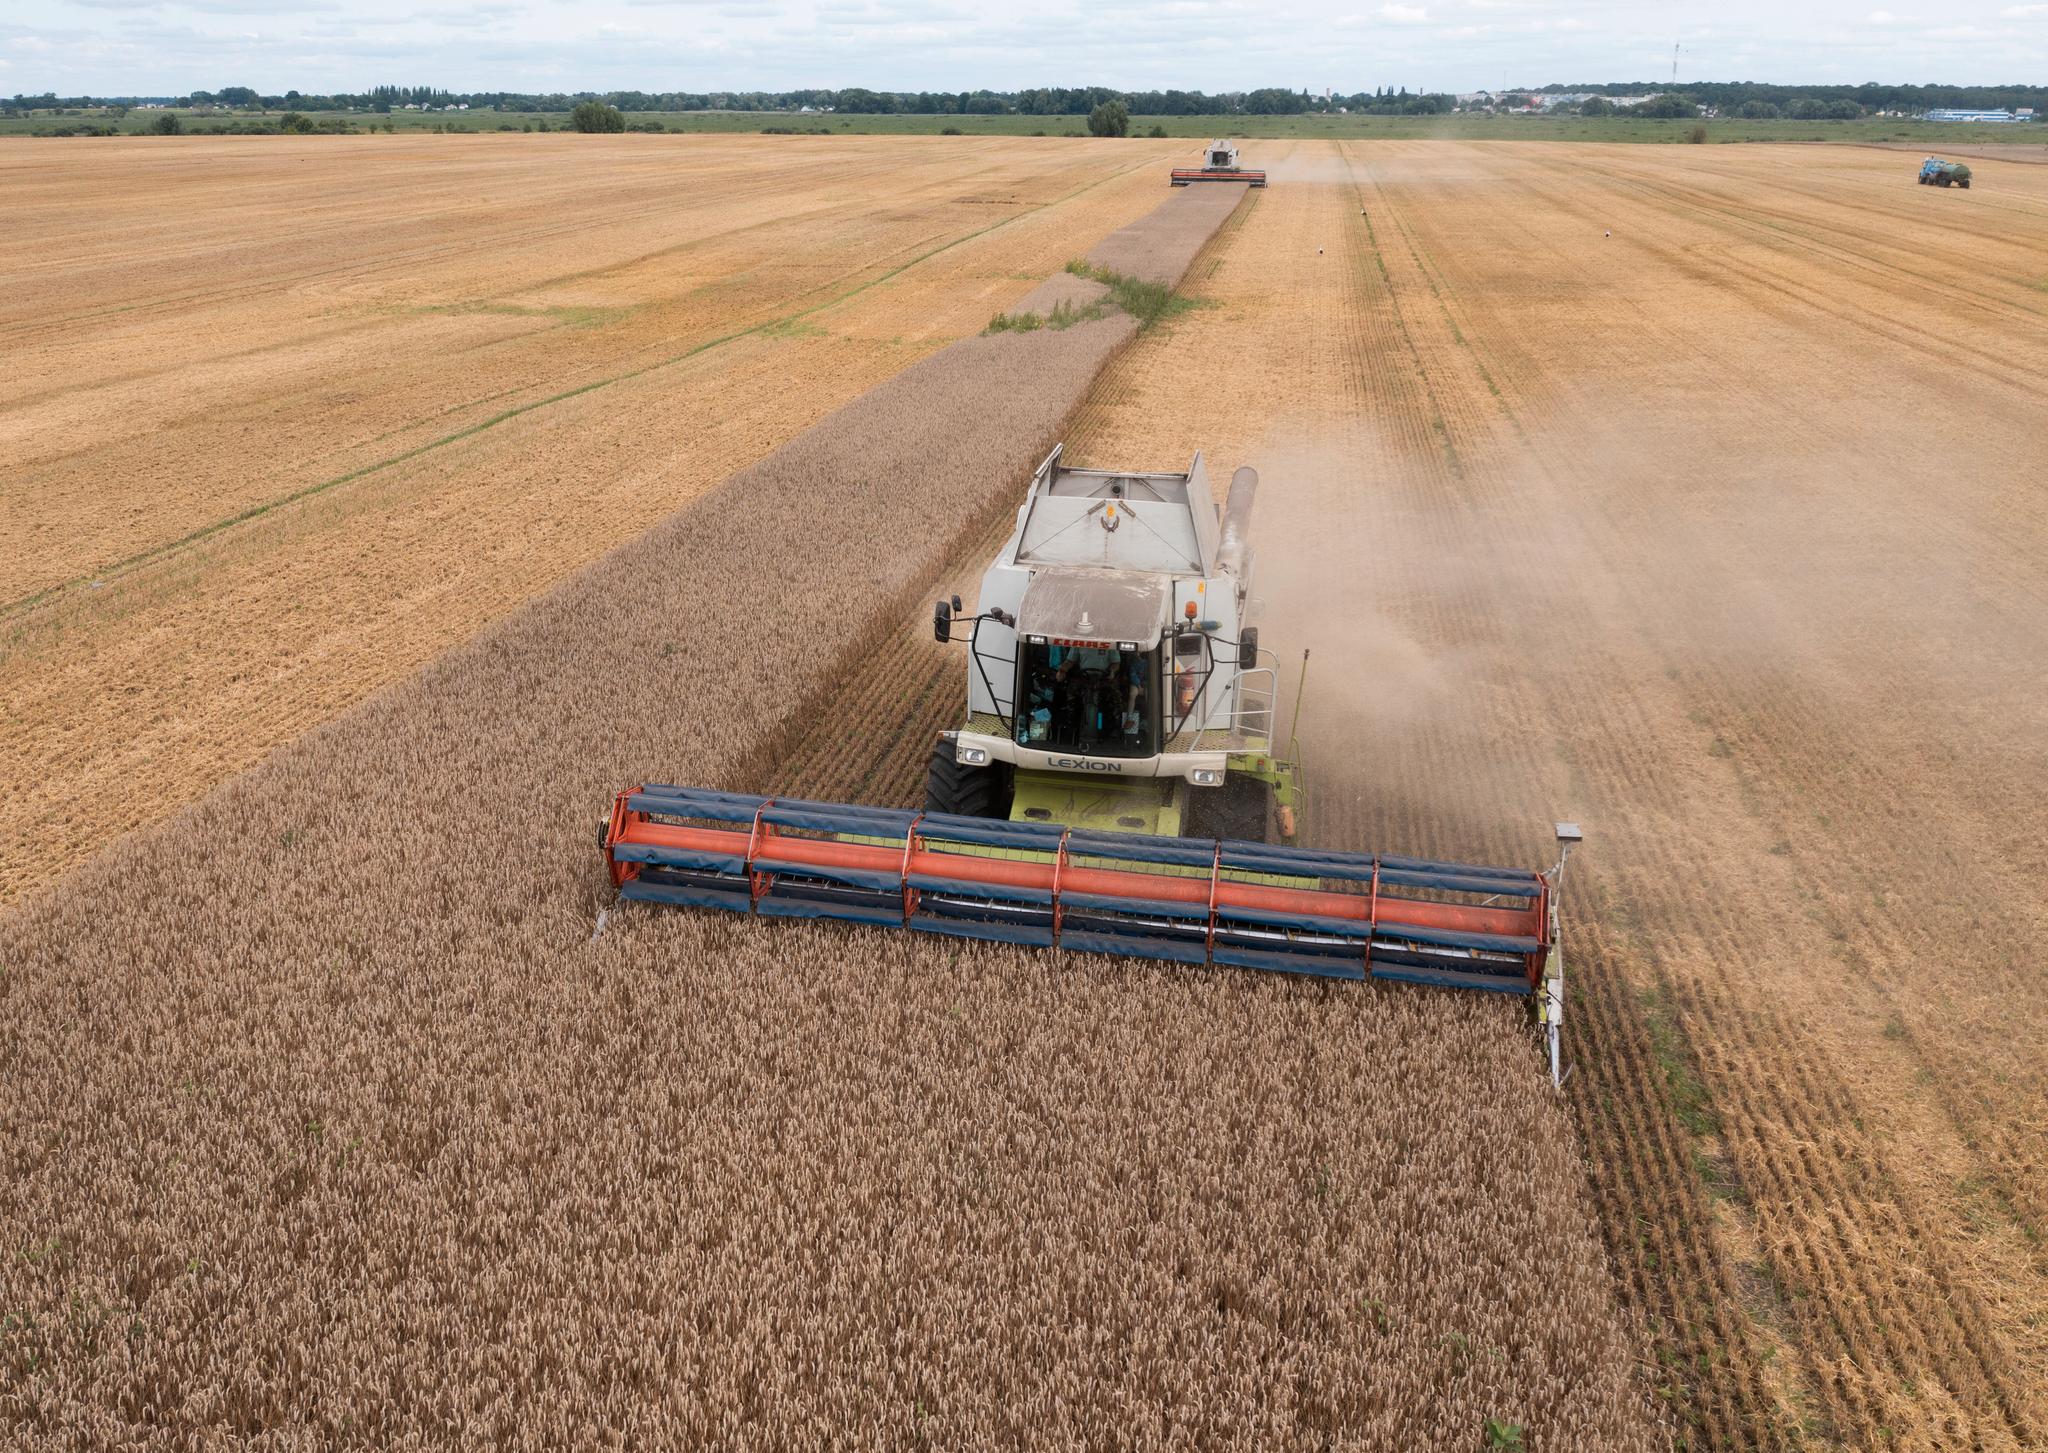 Spørsmålet om ukrainsk korn fortsatt skal finne veien ut i verden gjennom Europa, har ført til heftig debatt mellom EU-landene. Et flertall av landene samt Ukraina har krevd det midlertidige importforbudet fjernet. 